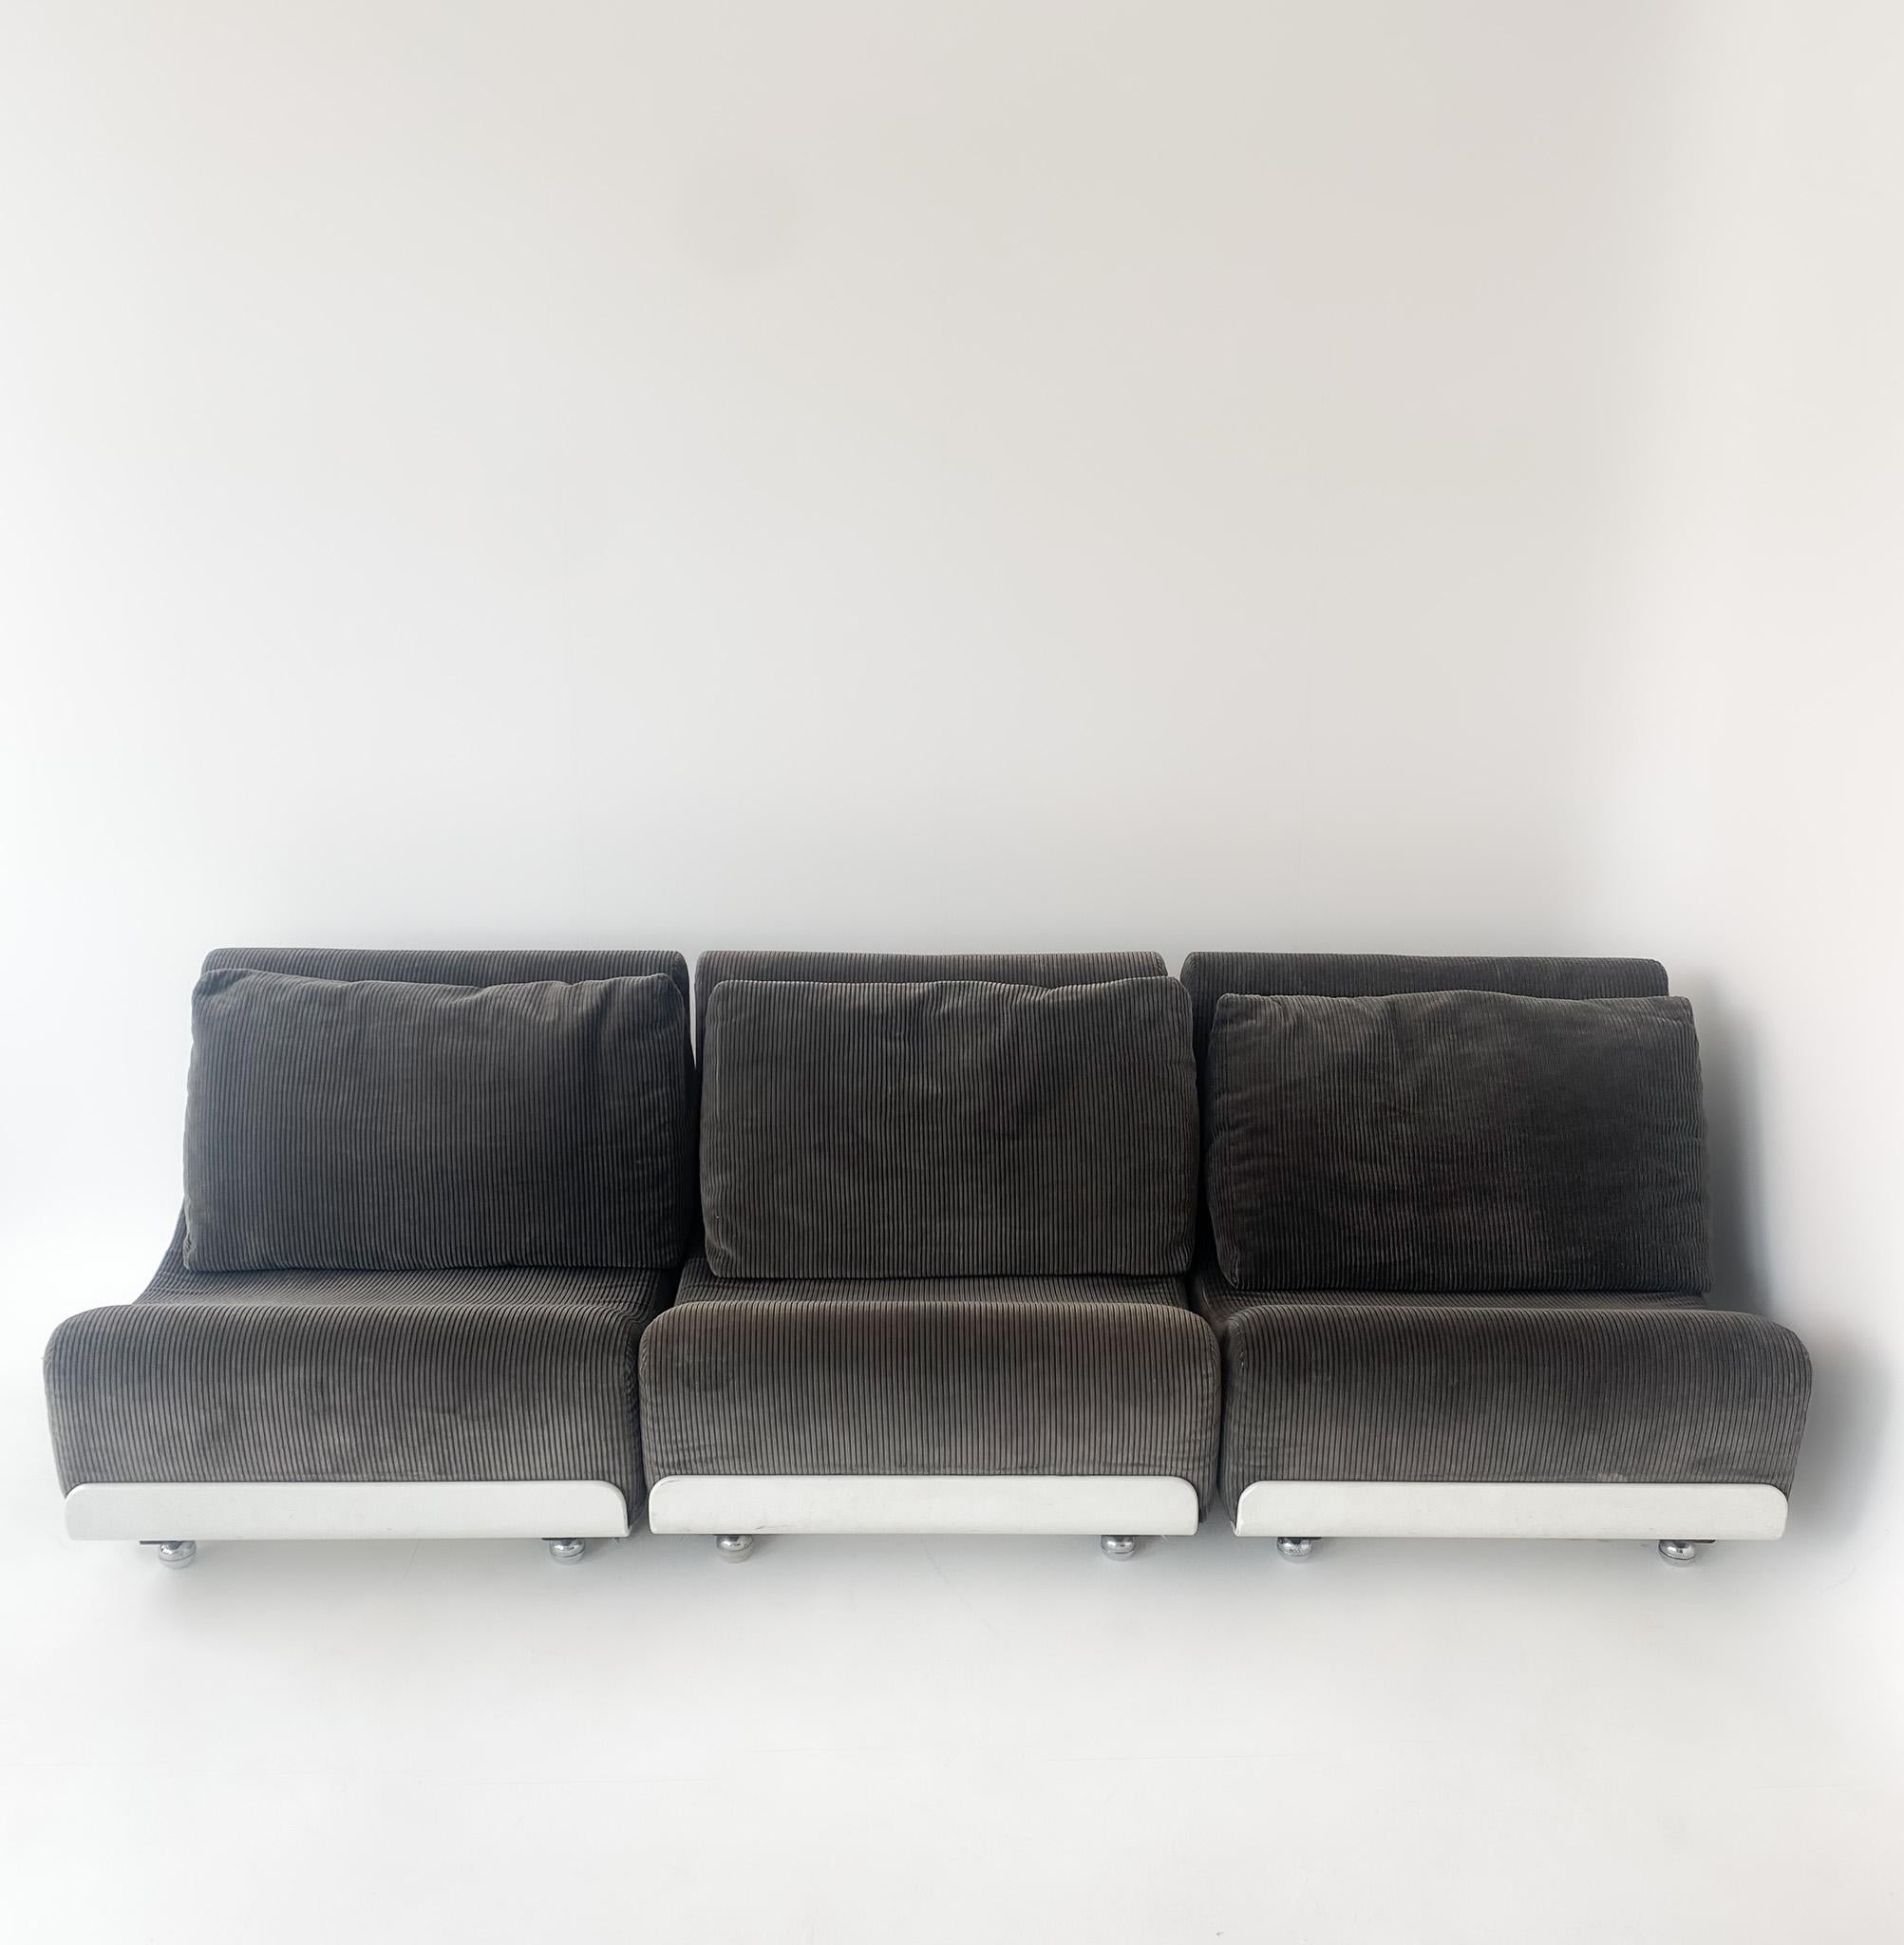 Canapé Orbis gris blanc moderne du milieu du siècle par Luigi Colani, Allemagne 1970.

Ensemble de salon branché en trois parties, gris et blanc, conçu par Luigi Colani pour CORS dans les années 70. Ce canapé se compose de trois éléments d'assise